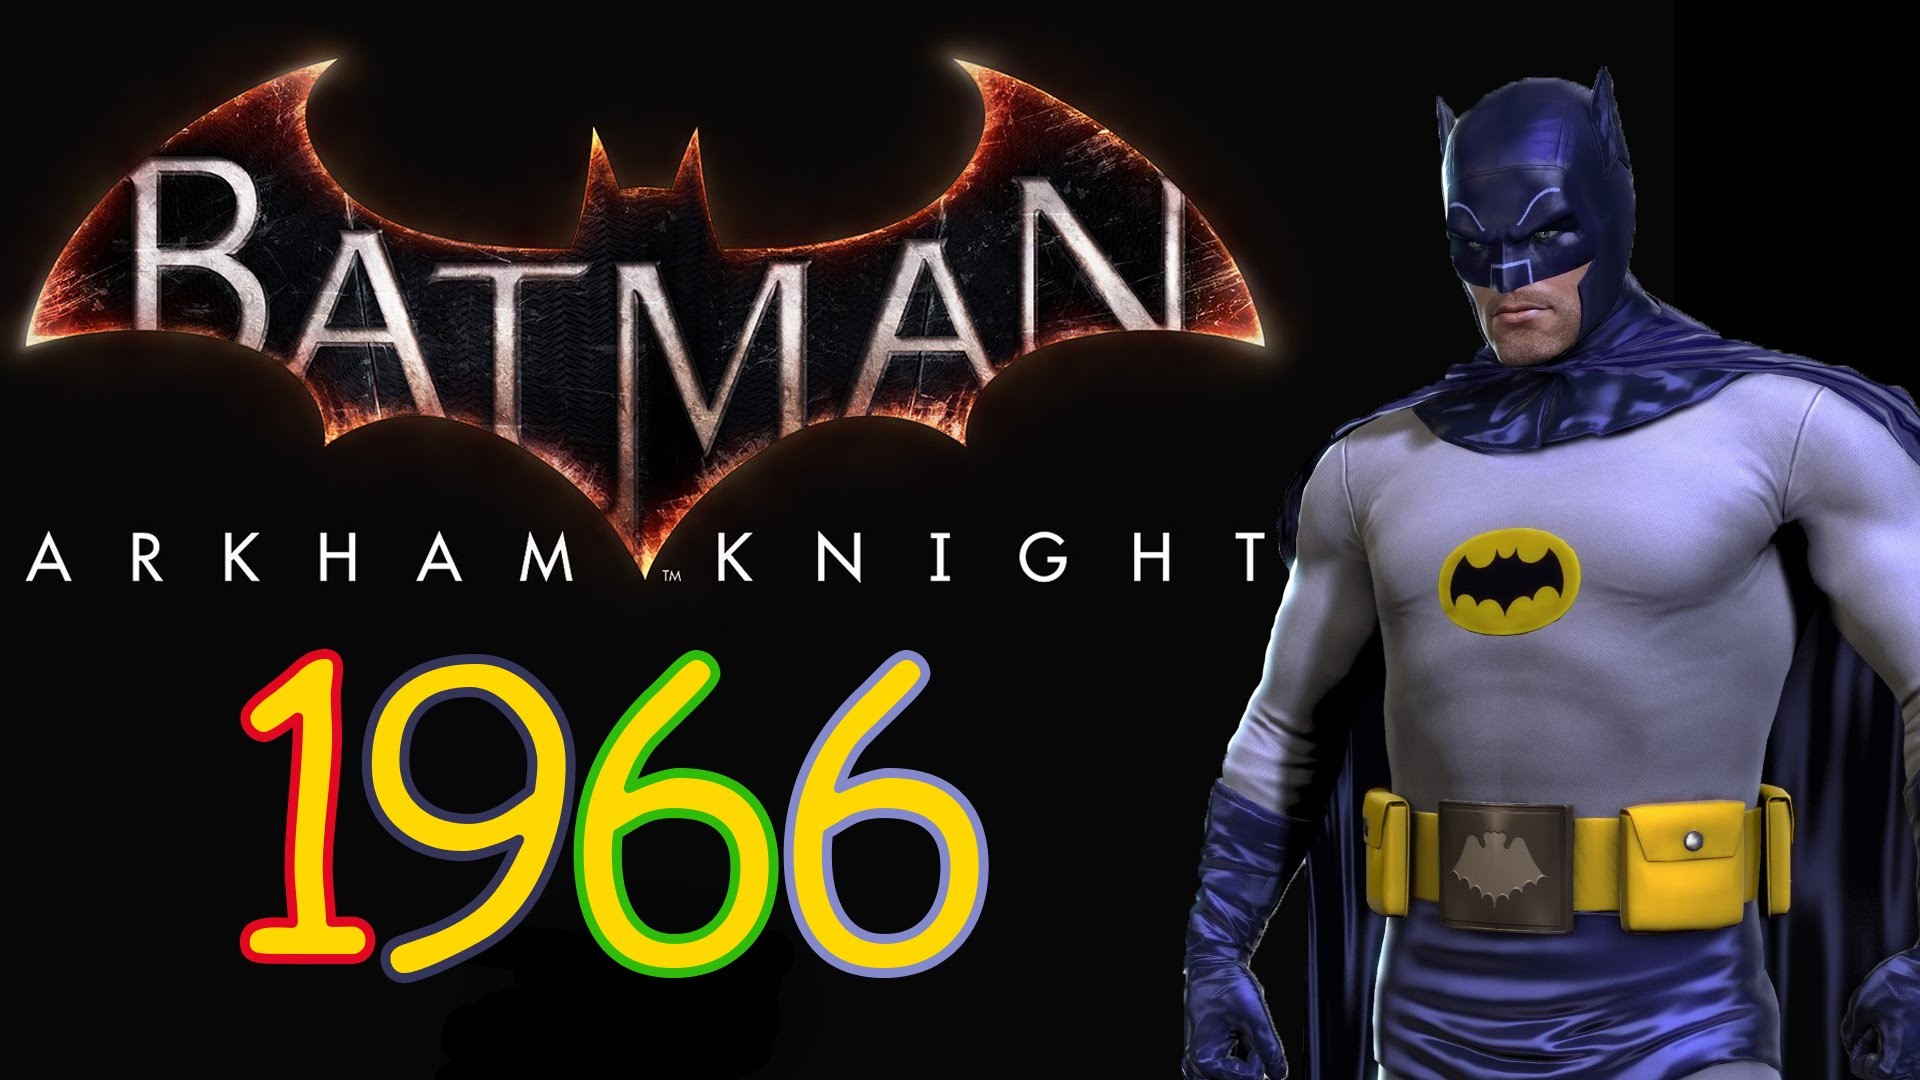 1920x1080 Batman Arkham Knight - 1966